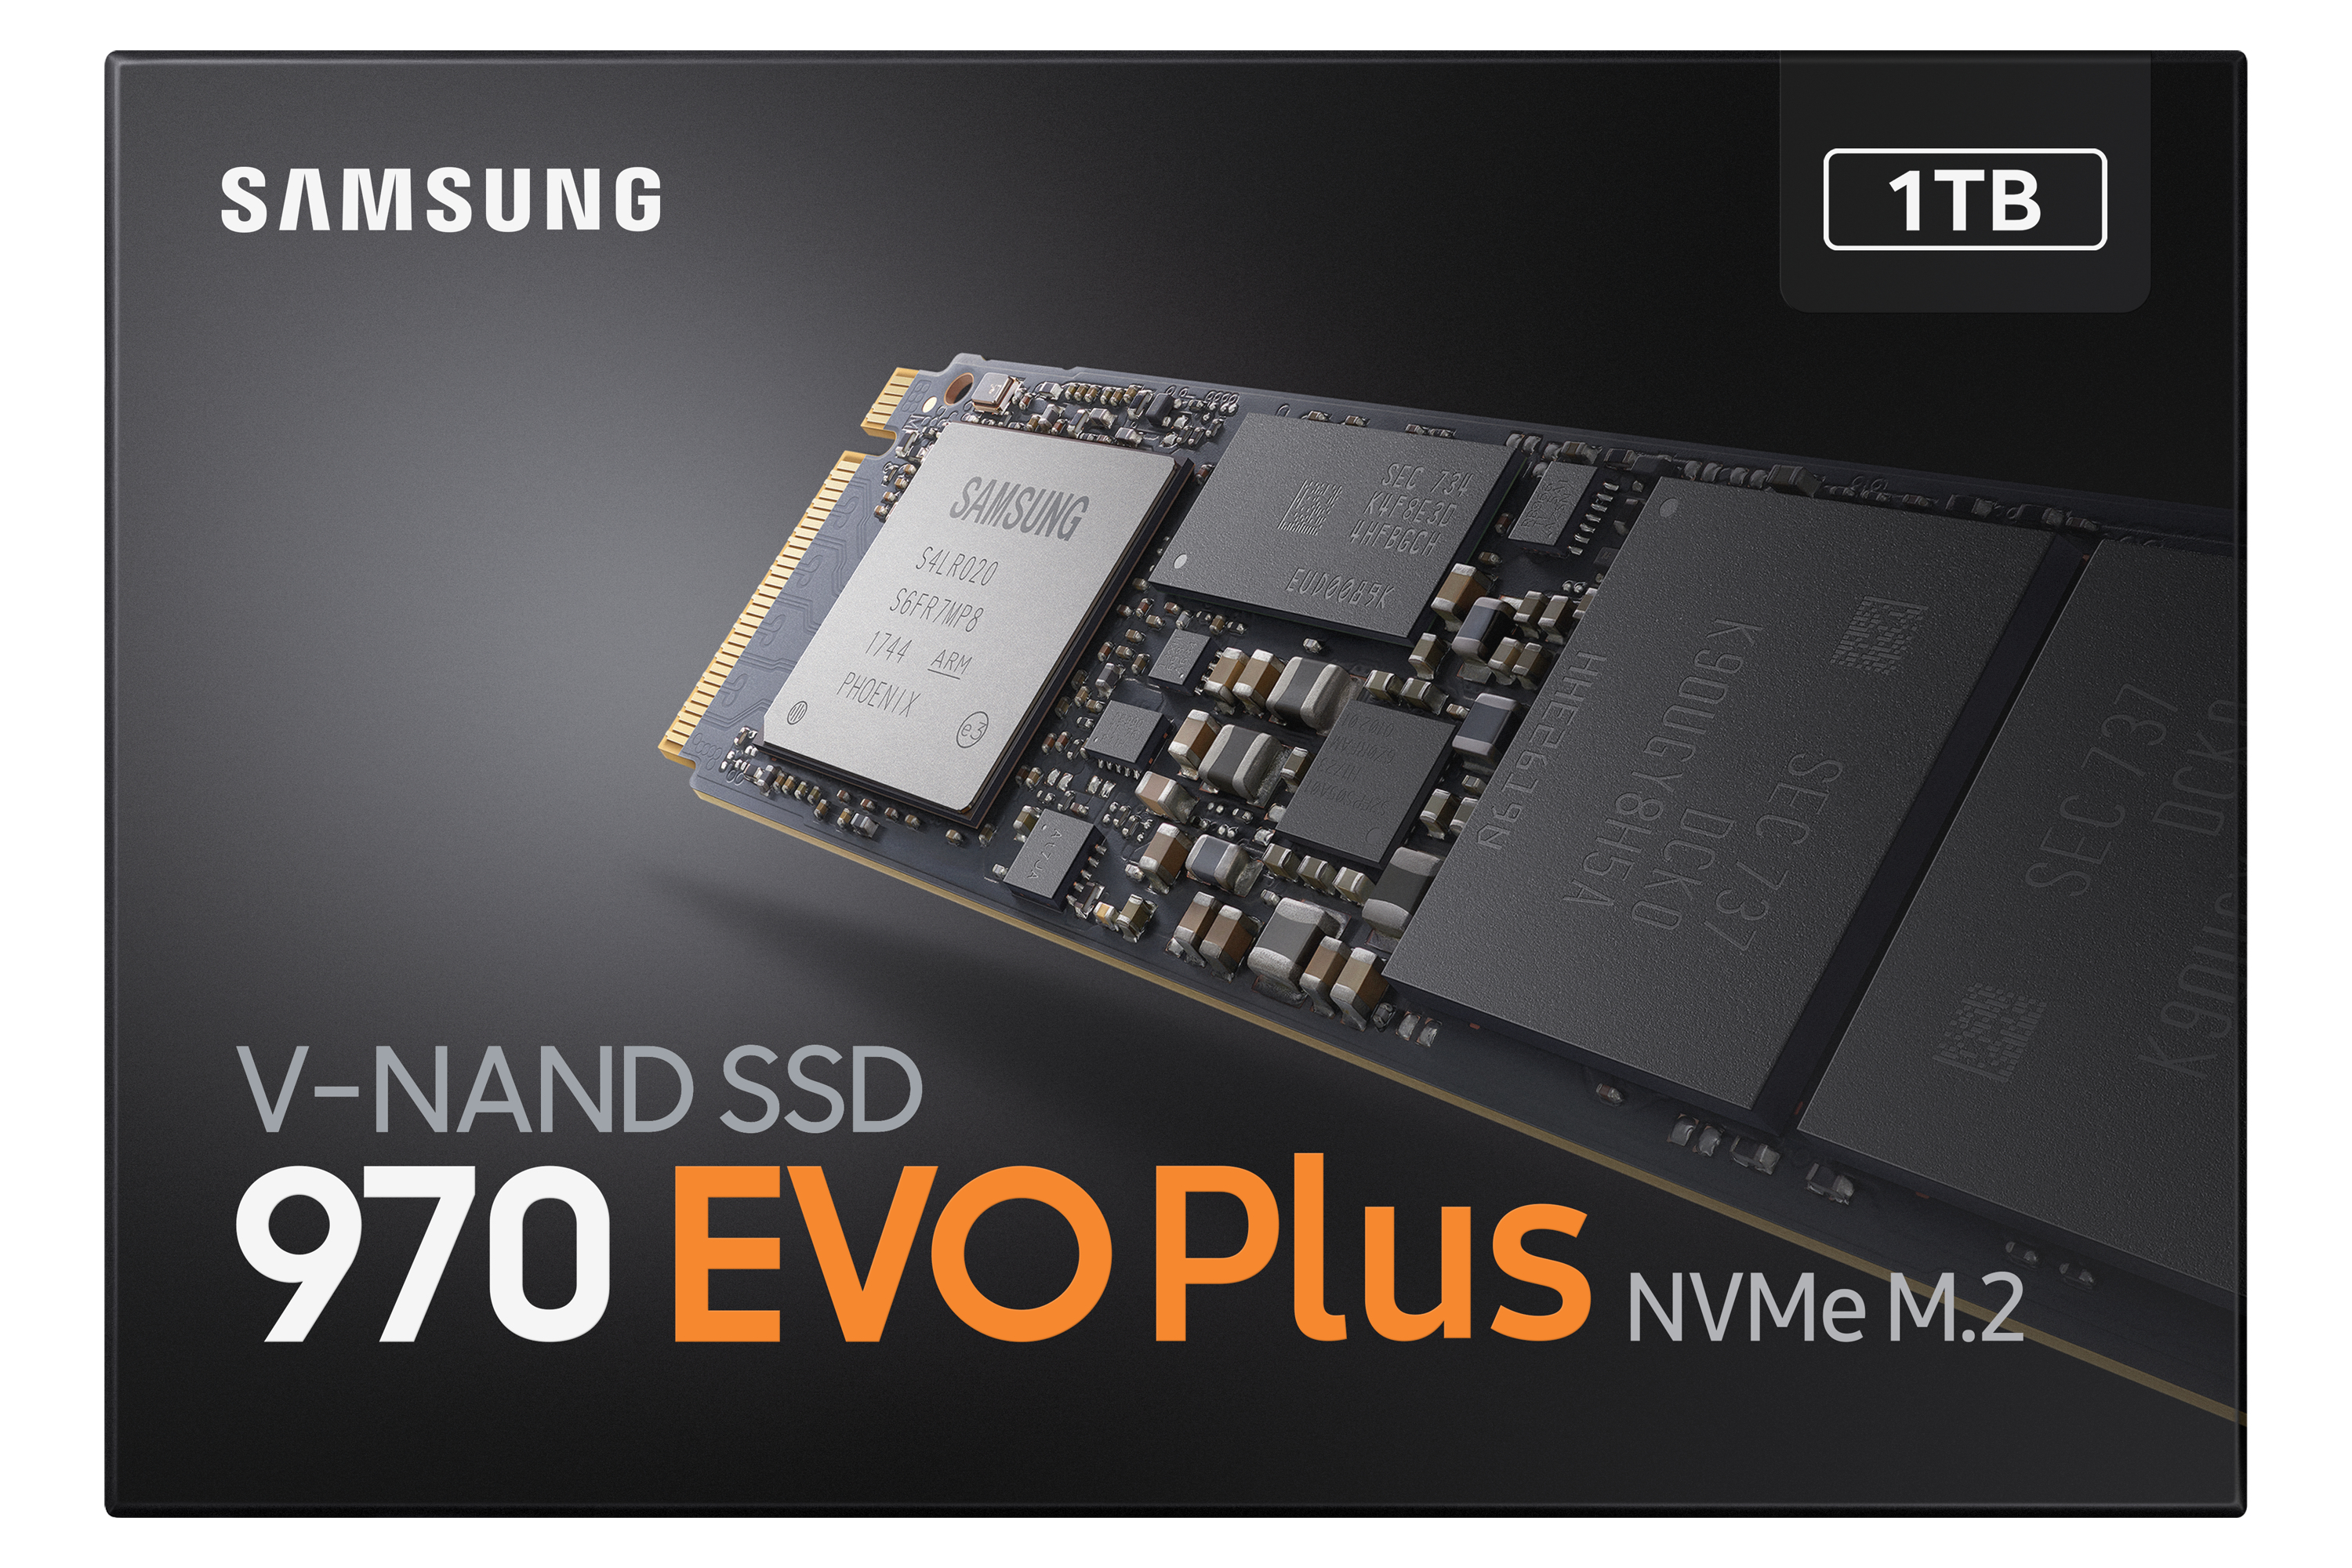 Samsung 970 EVO Plus MZ-V7S1T0BW